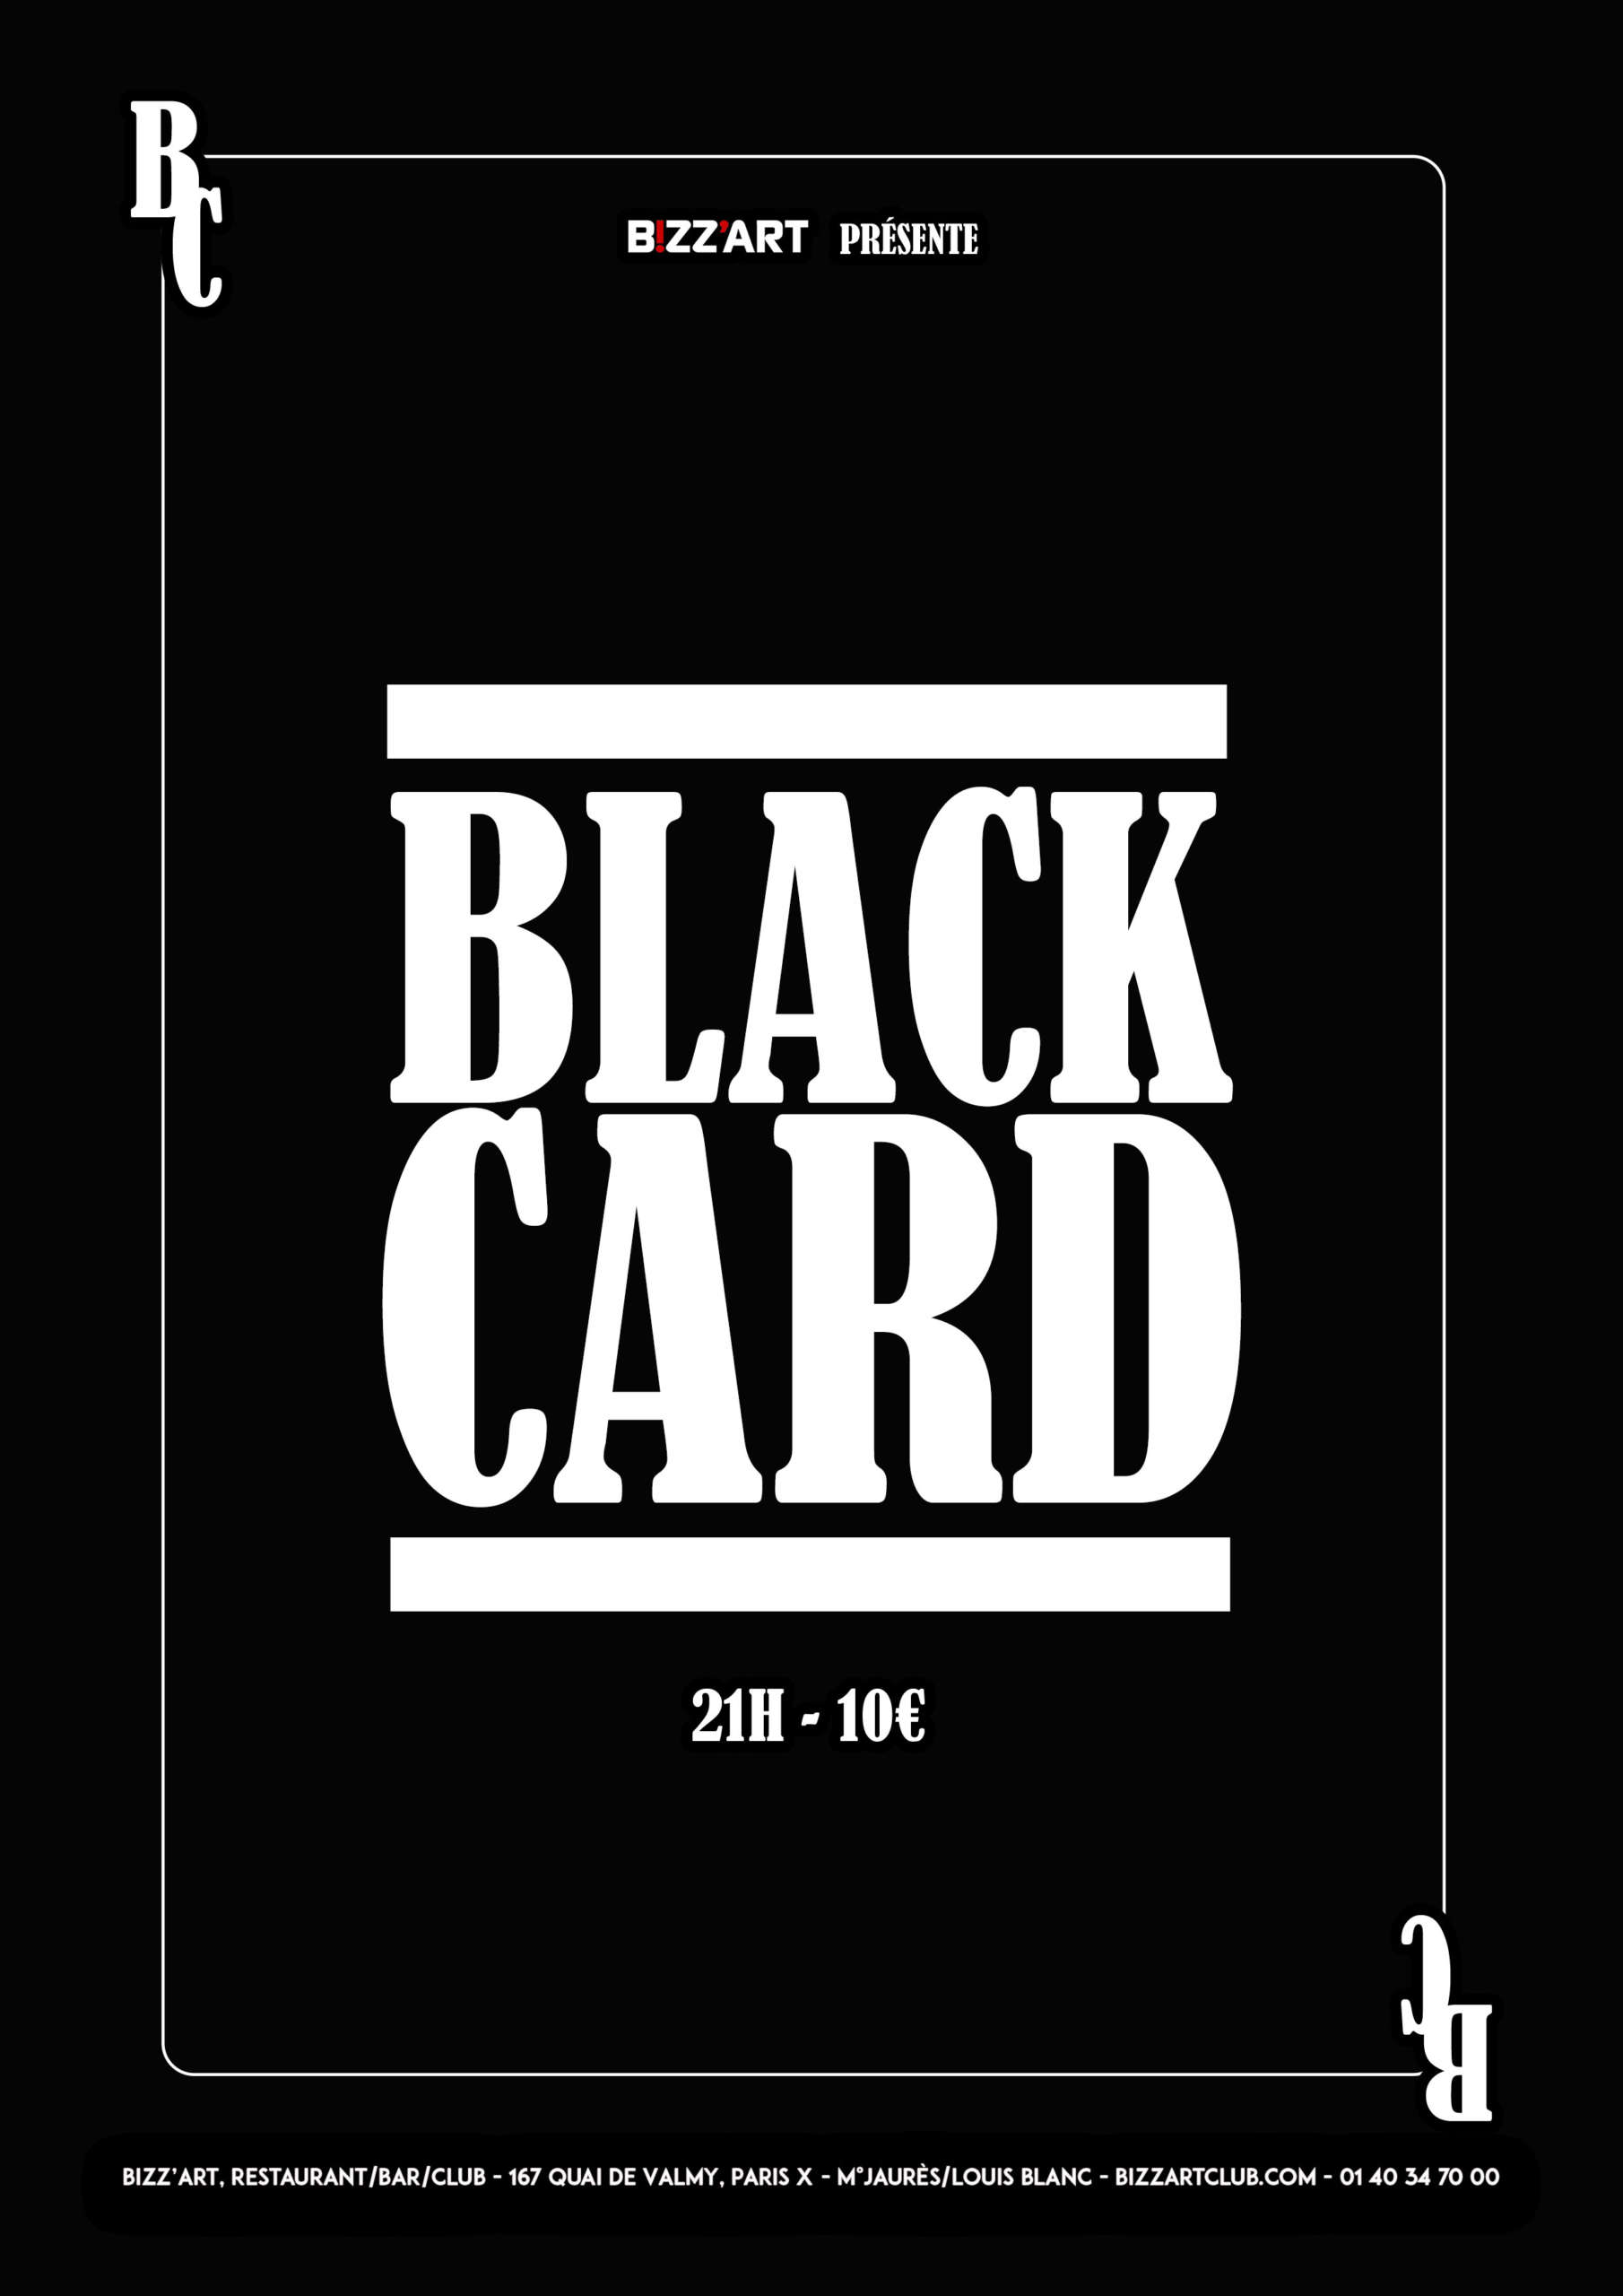 black card live @bizz'art paris